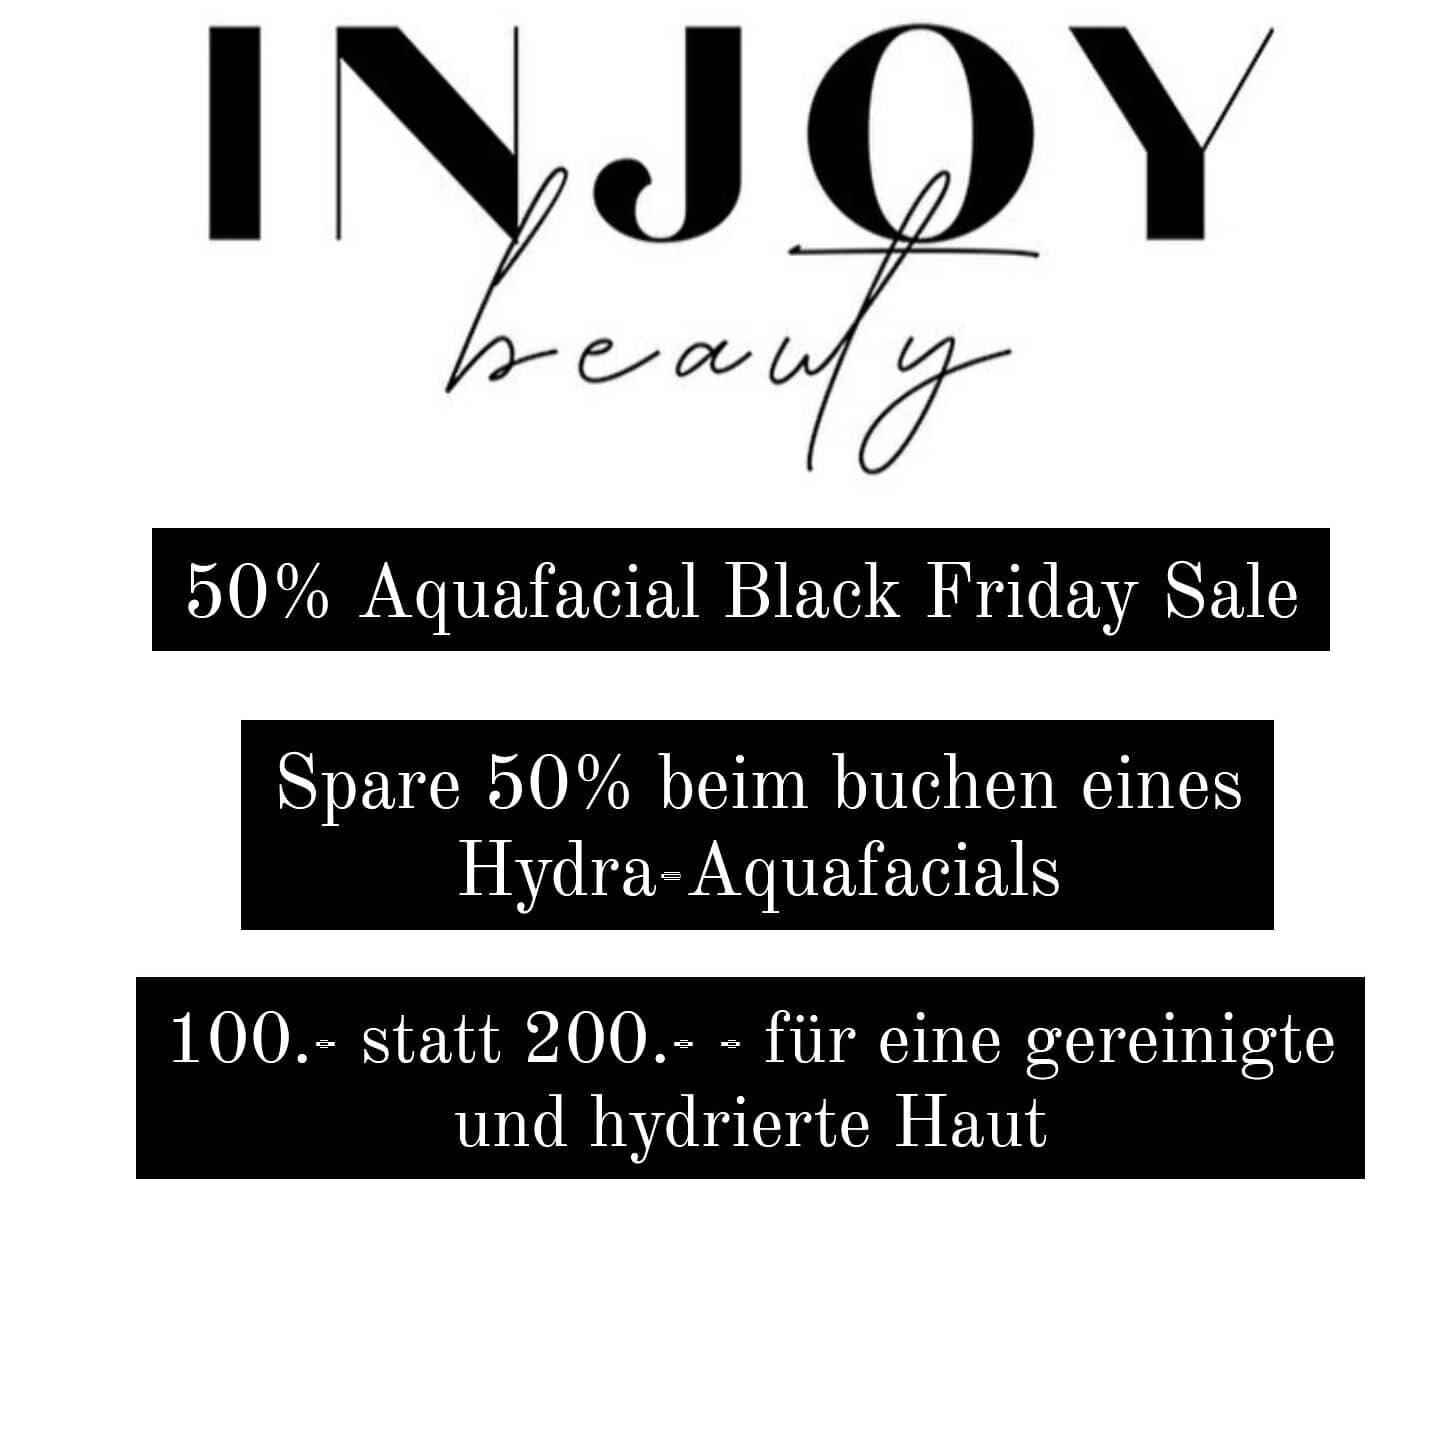 It's Black Fridayyyyyy! 50% auf dein Hydra-Aquafacial mit dem Sparcode : BlackFriday20 !!! 

Swipe nach rechts f&uuml;r die Ergebnisse. 

Buchbar online unter: www.injoy-beauty.com
 &quot;Facials&quot;

Nur bis 30.11.20!  Profitiere jetzt!

#injoybea